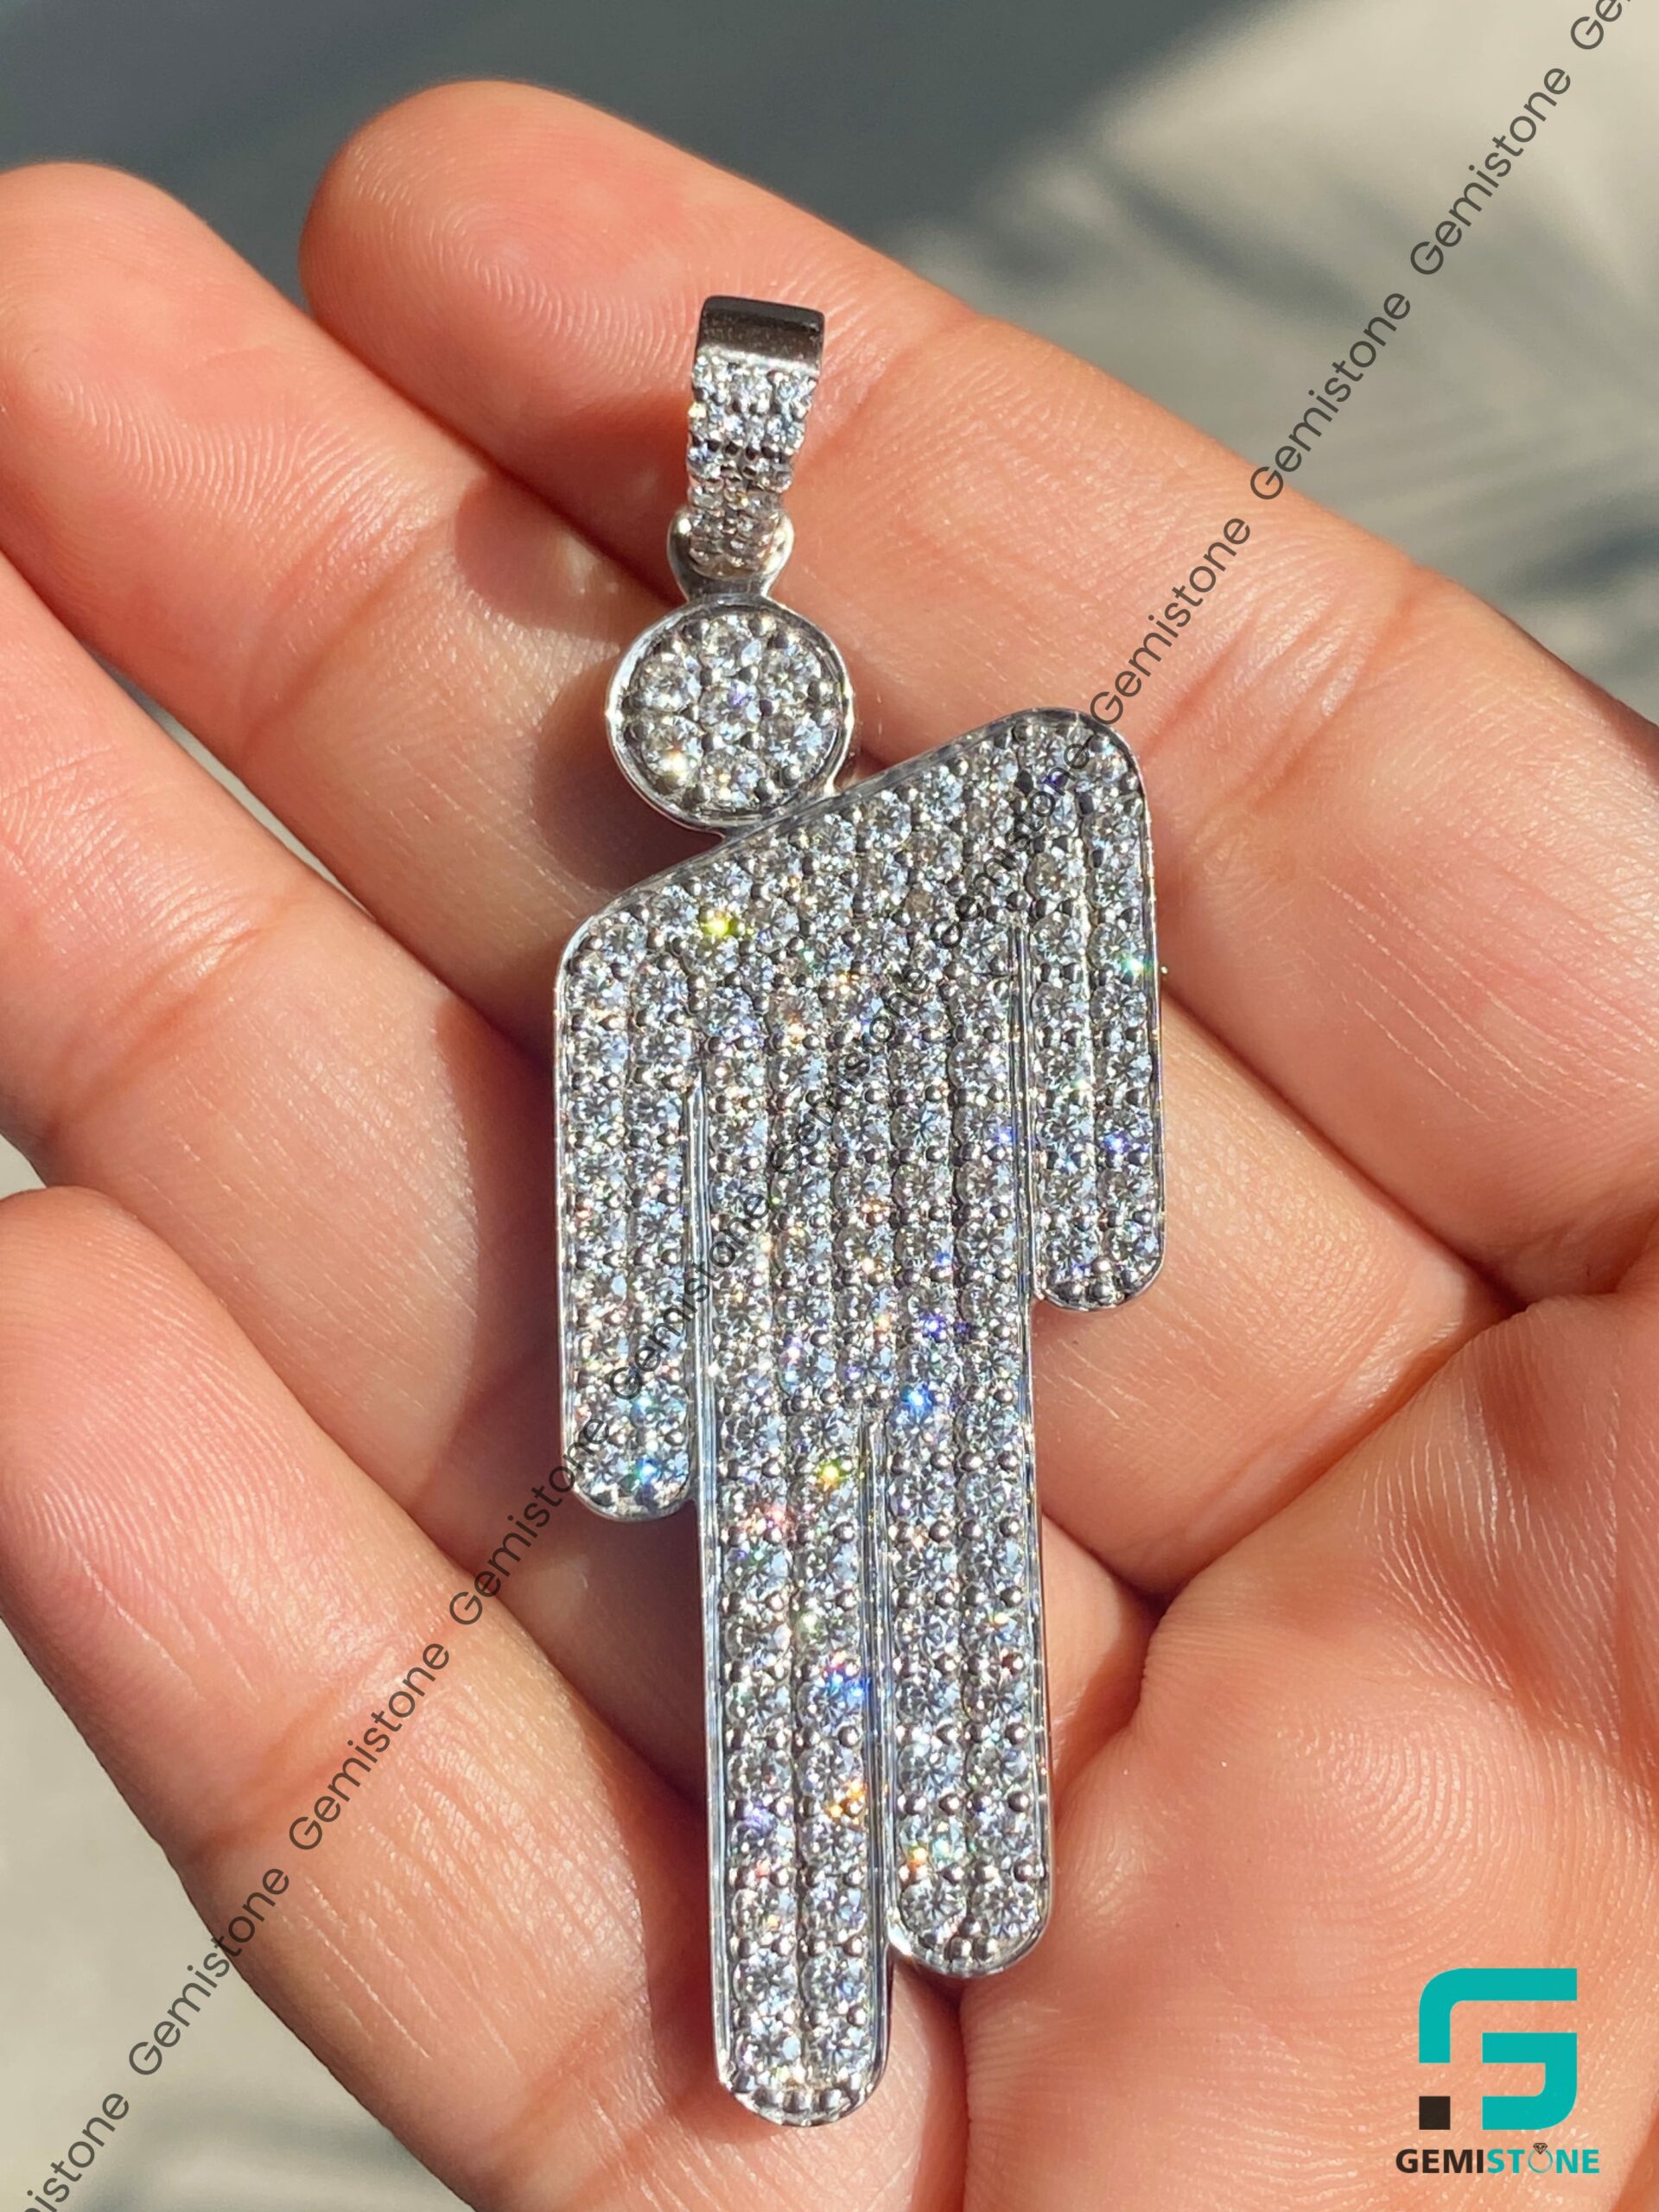 Billie Eilish OG sterling silver blohsh pendant necklace *official* | eBay